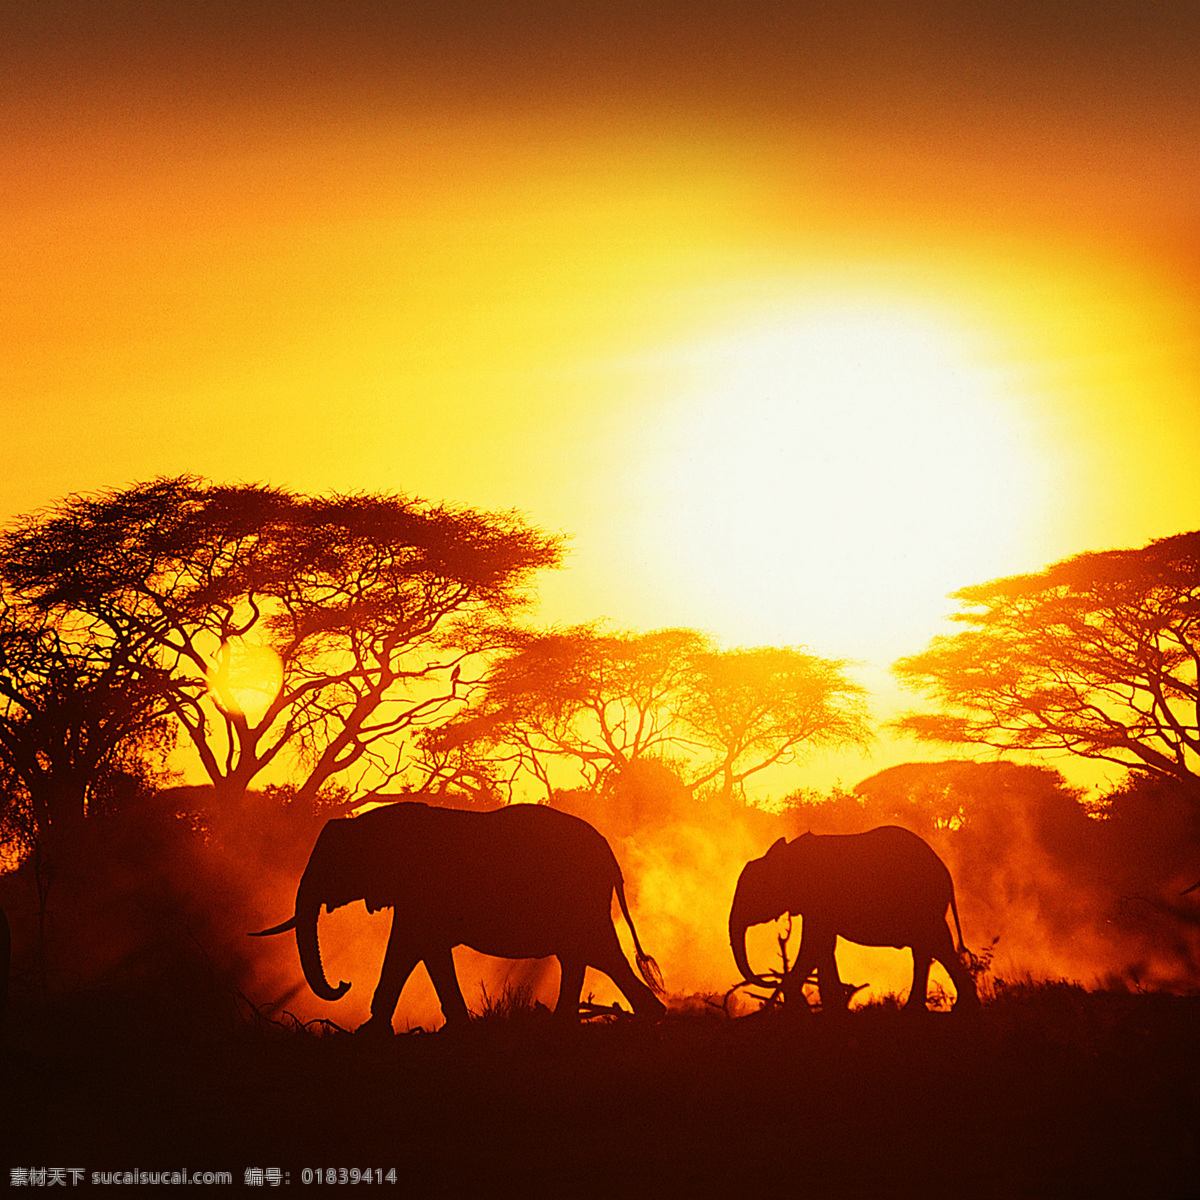 大象 动物 黄昏 夕阳 野生动物 野生大象 生物世界